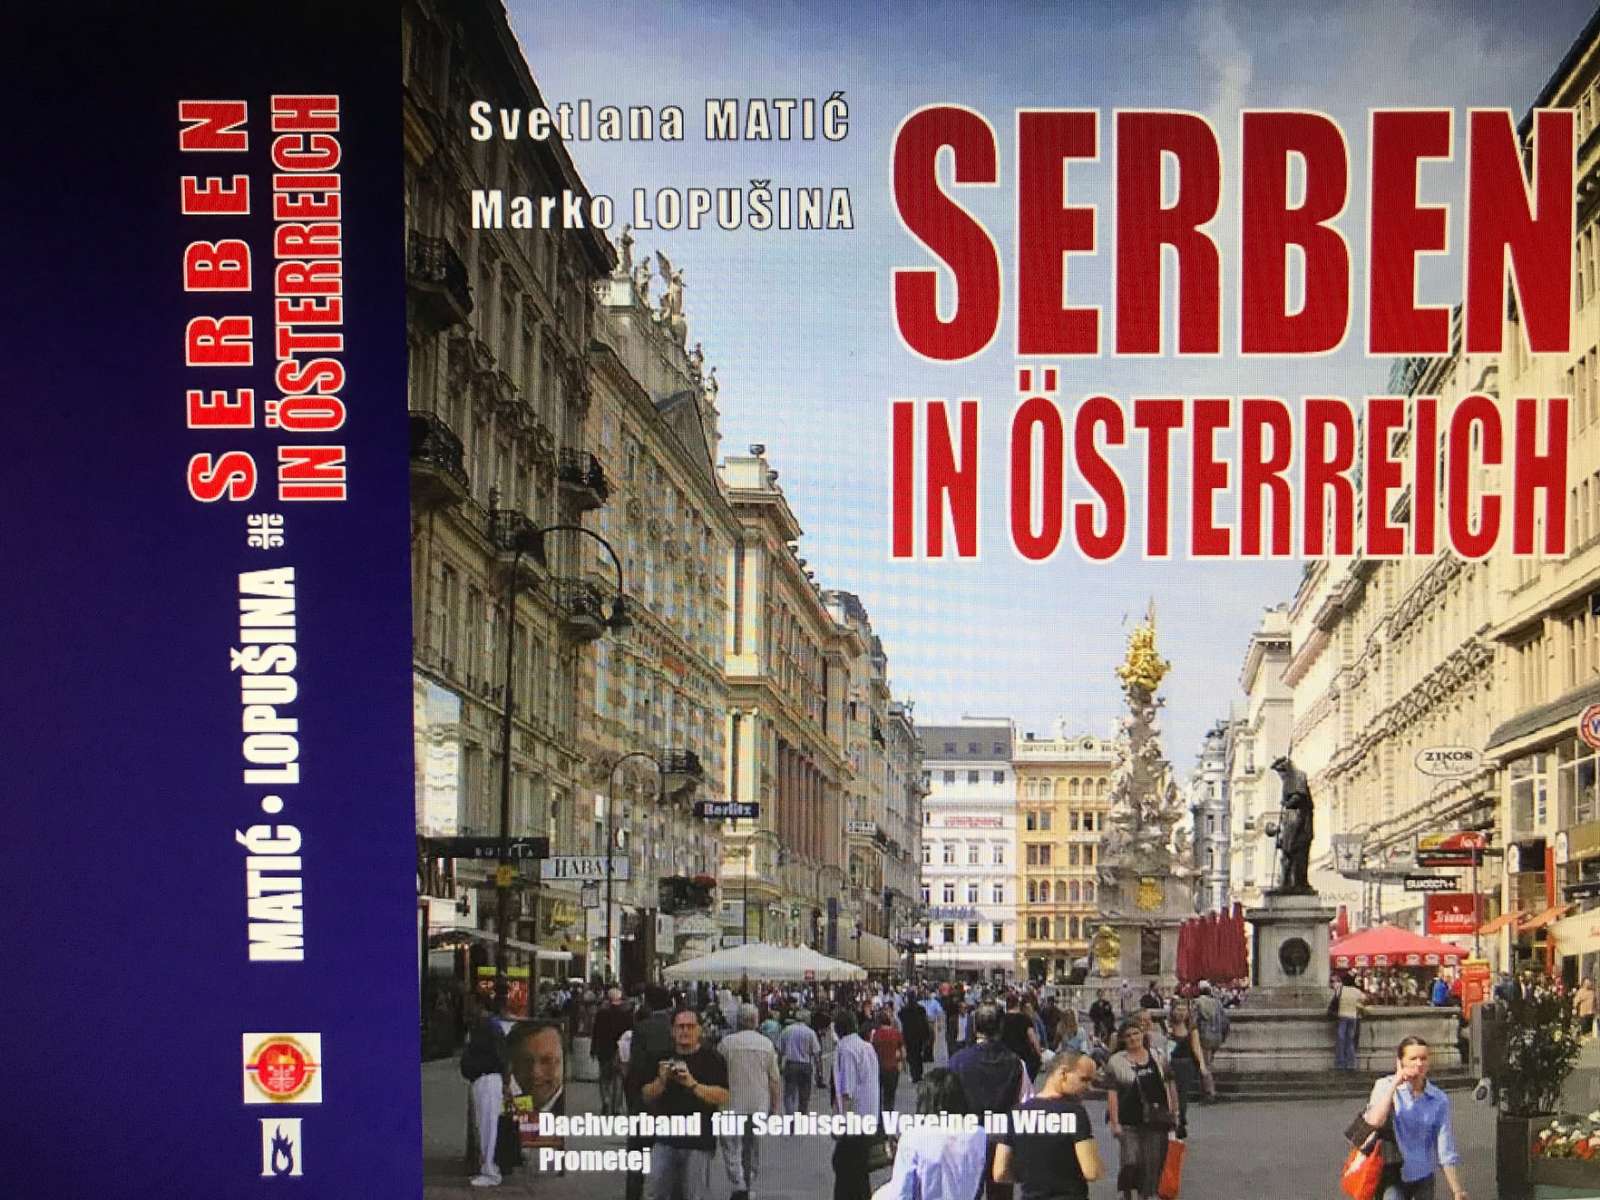 Knjiga "Srbi u Austriji" na nemačkom jeziku 